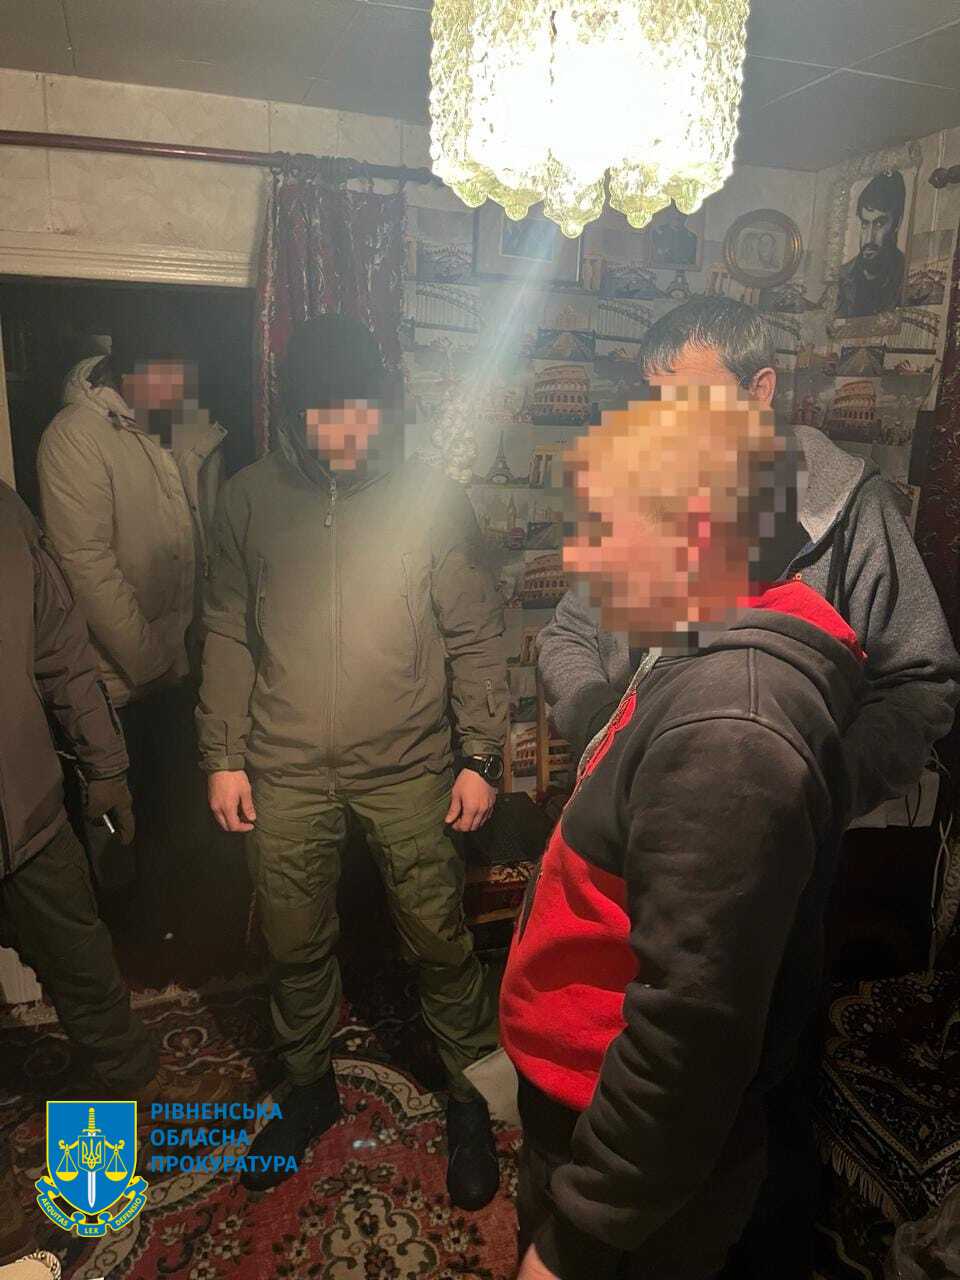 Правоохоронці затримали жінку, яка «зливала» ворогу дані про розміщення техніки та місця дислокації ЗСУ на Харківщині